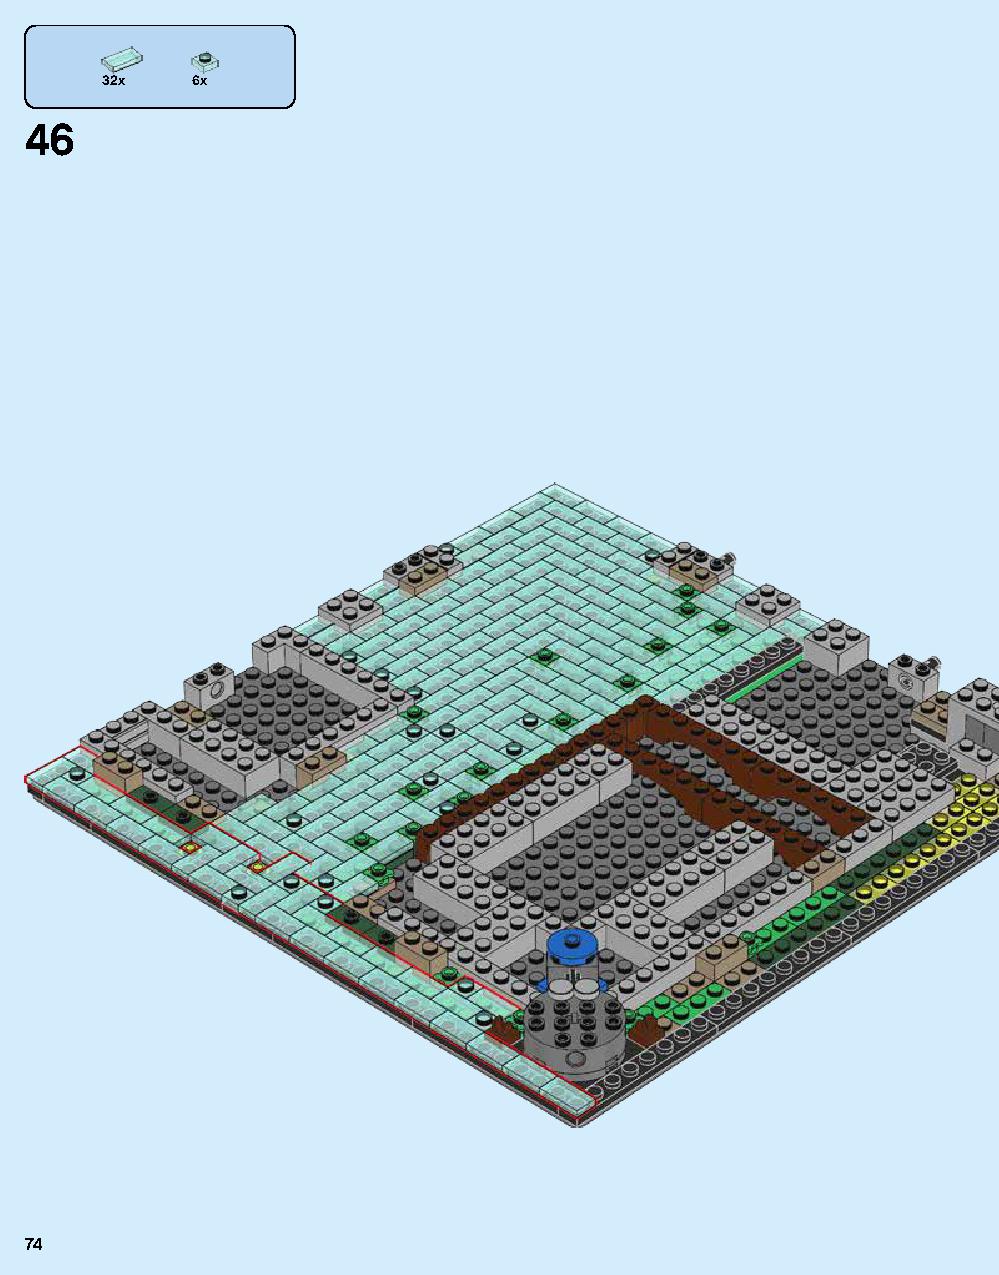 ニンジャゴー シティ 70620 レゴの商品情報 レゴの説明書・組立方法 74 page